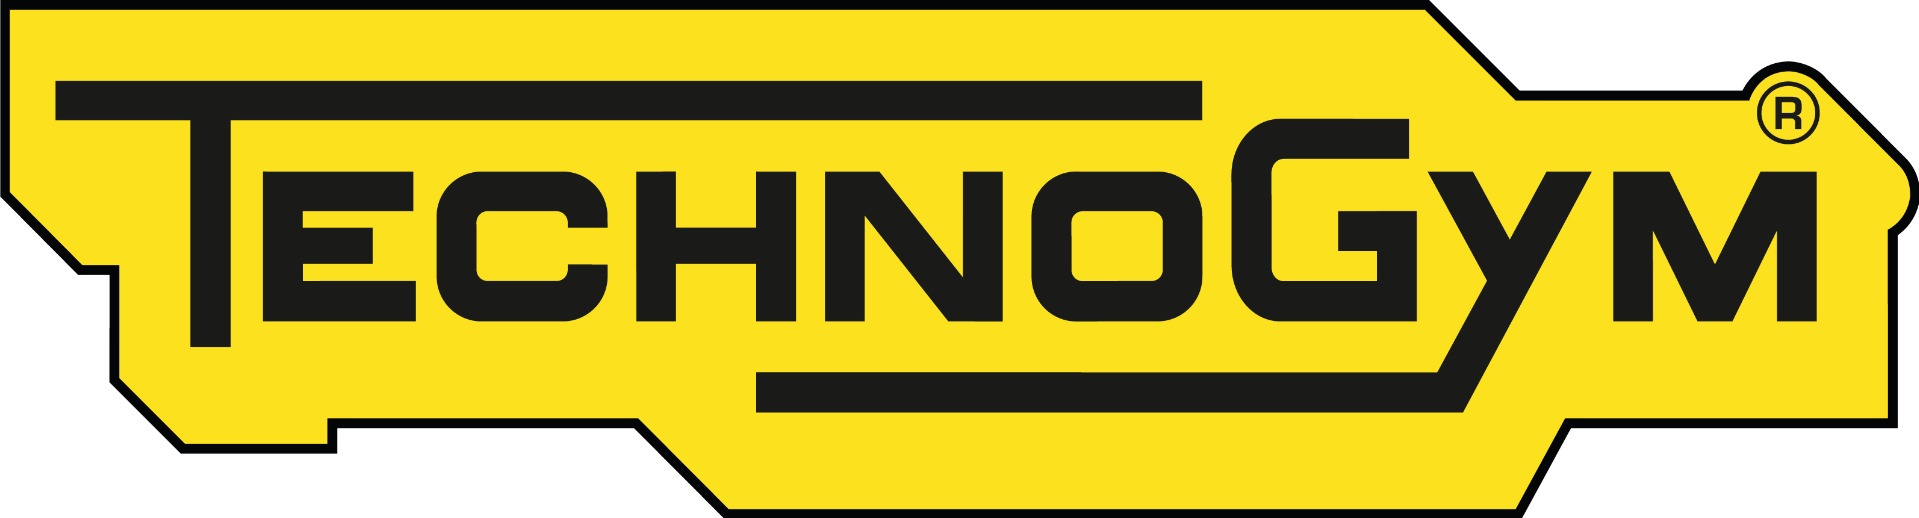 Technogym_Logo_RGB